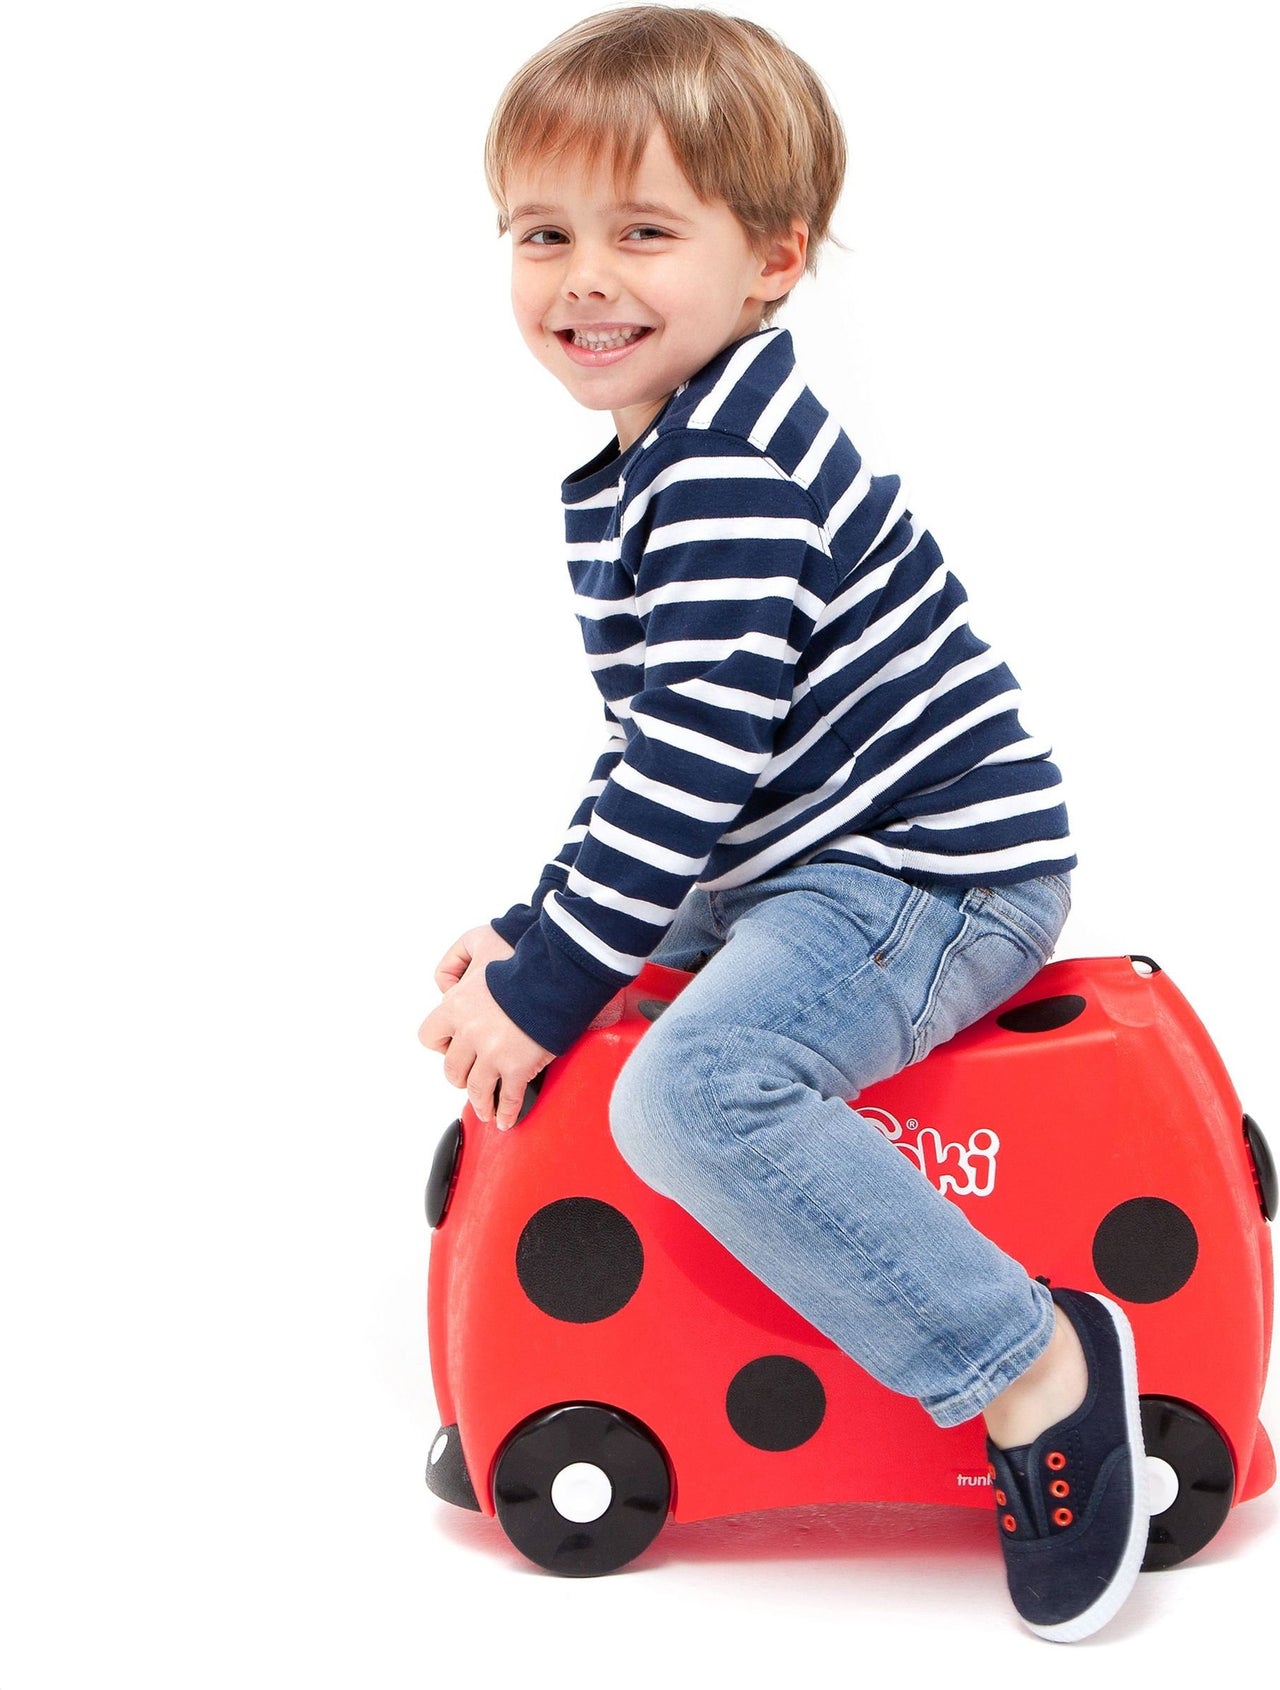 Ride-on kids suitcase - Harley Ladybug